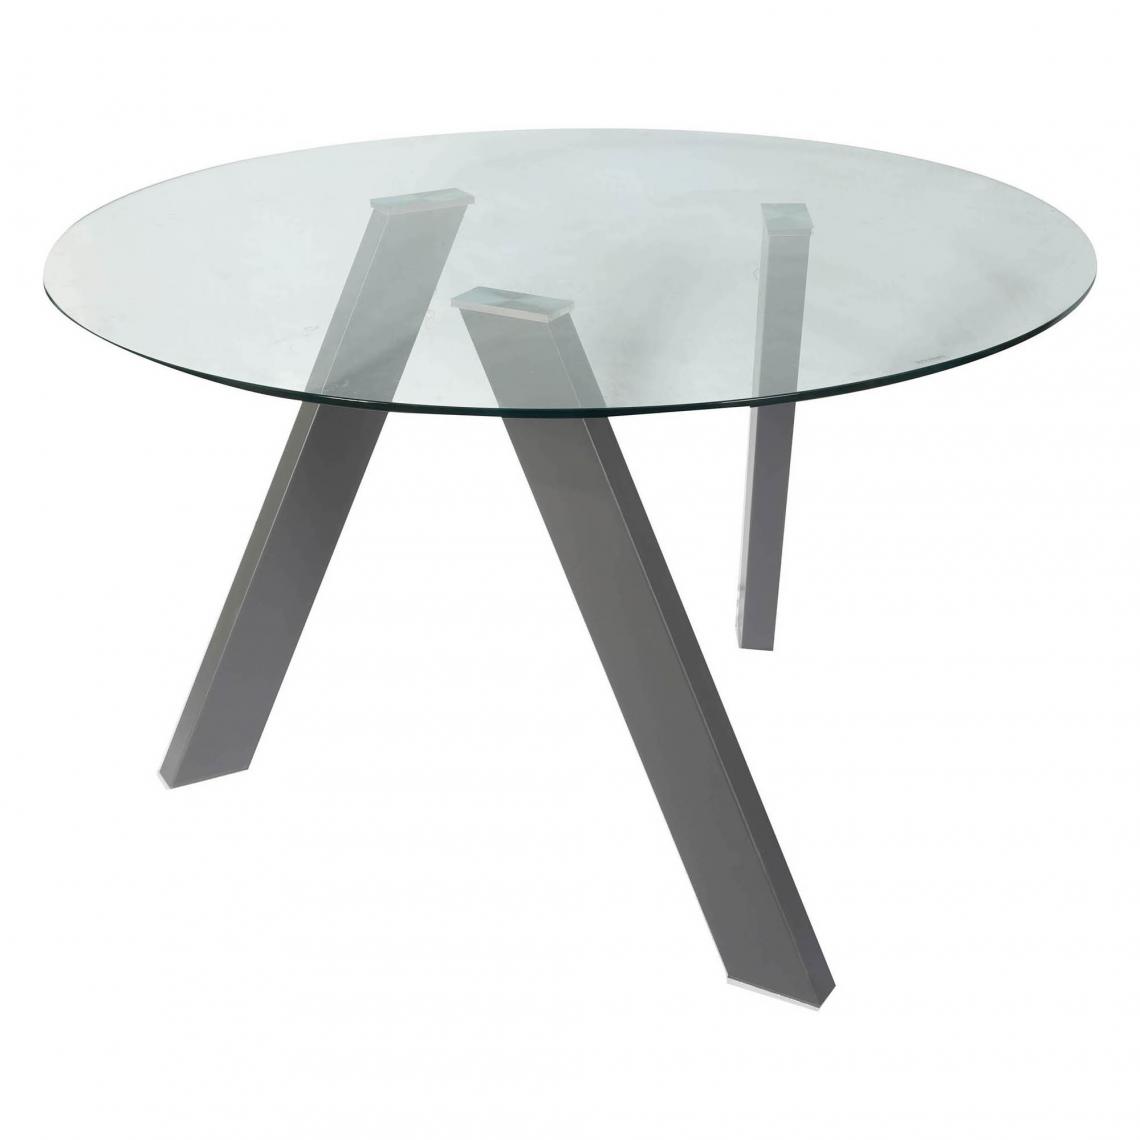 Alter - Table basse avec plateau rond, Table de salon, Table basse design avec plateau en verre trempé, 120x120h75 cm, Couleur transparente - Tables à manger